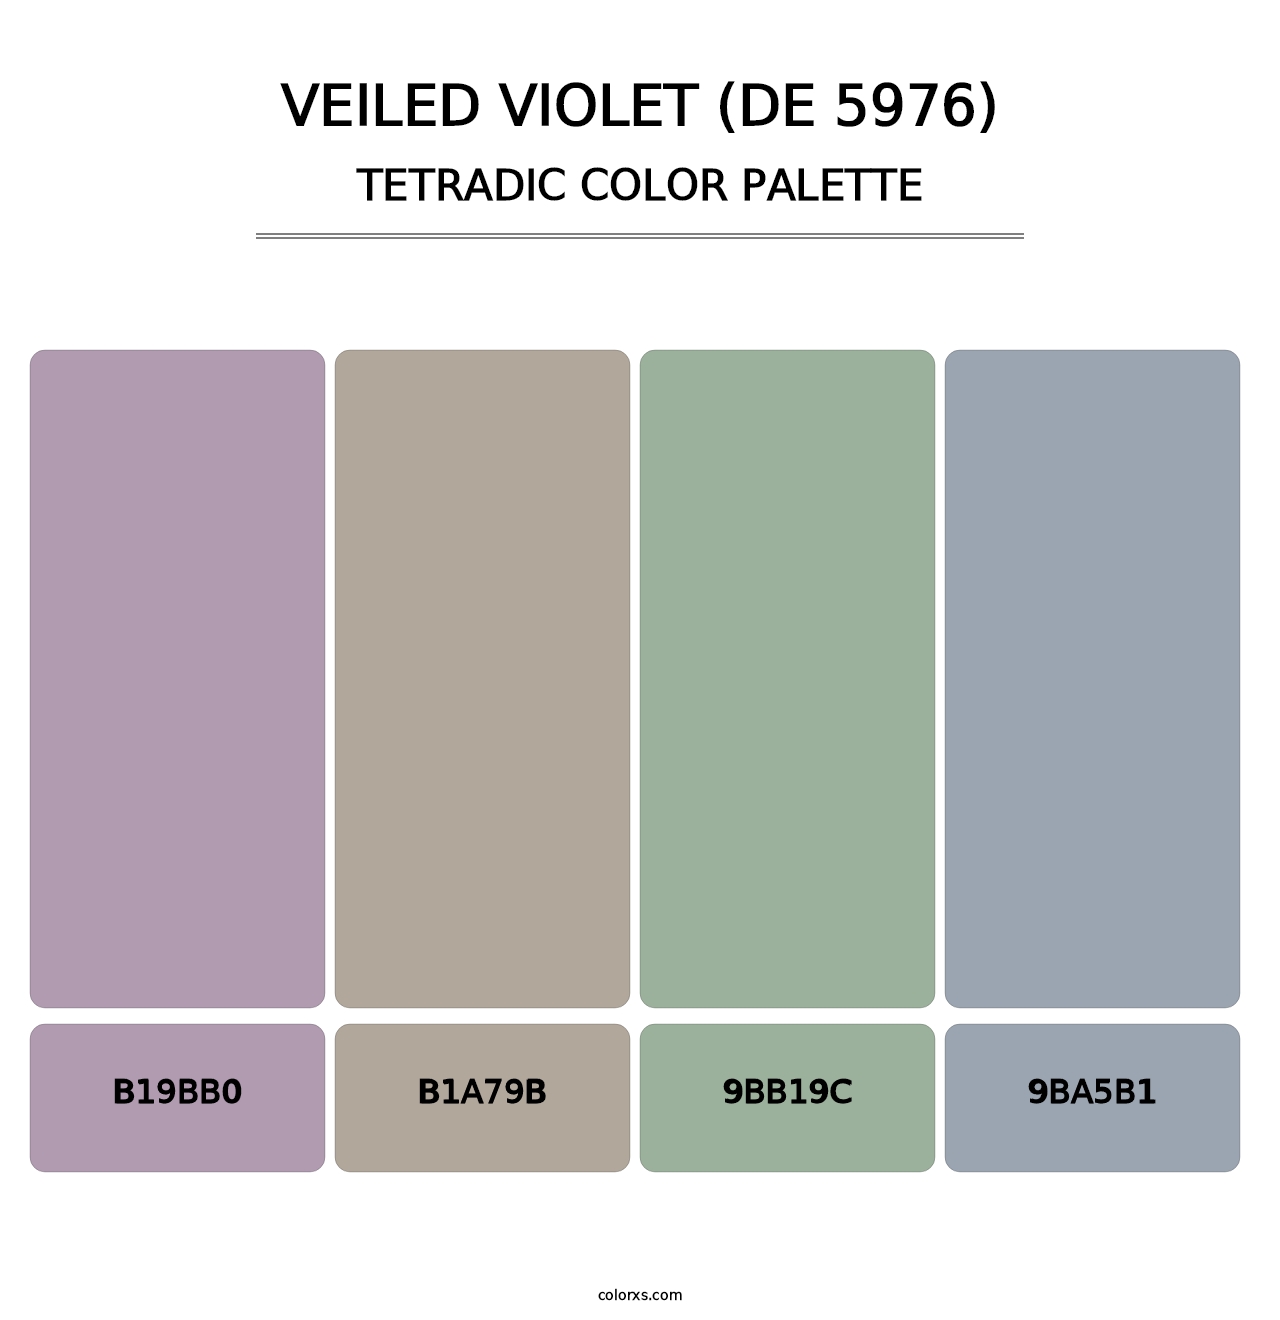 Veiled Violet (DE 5976) - Tetradic Color Palette